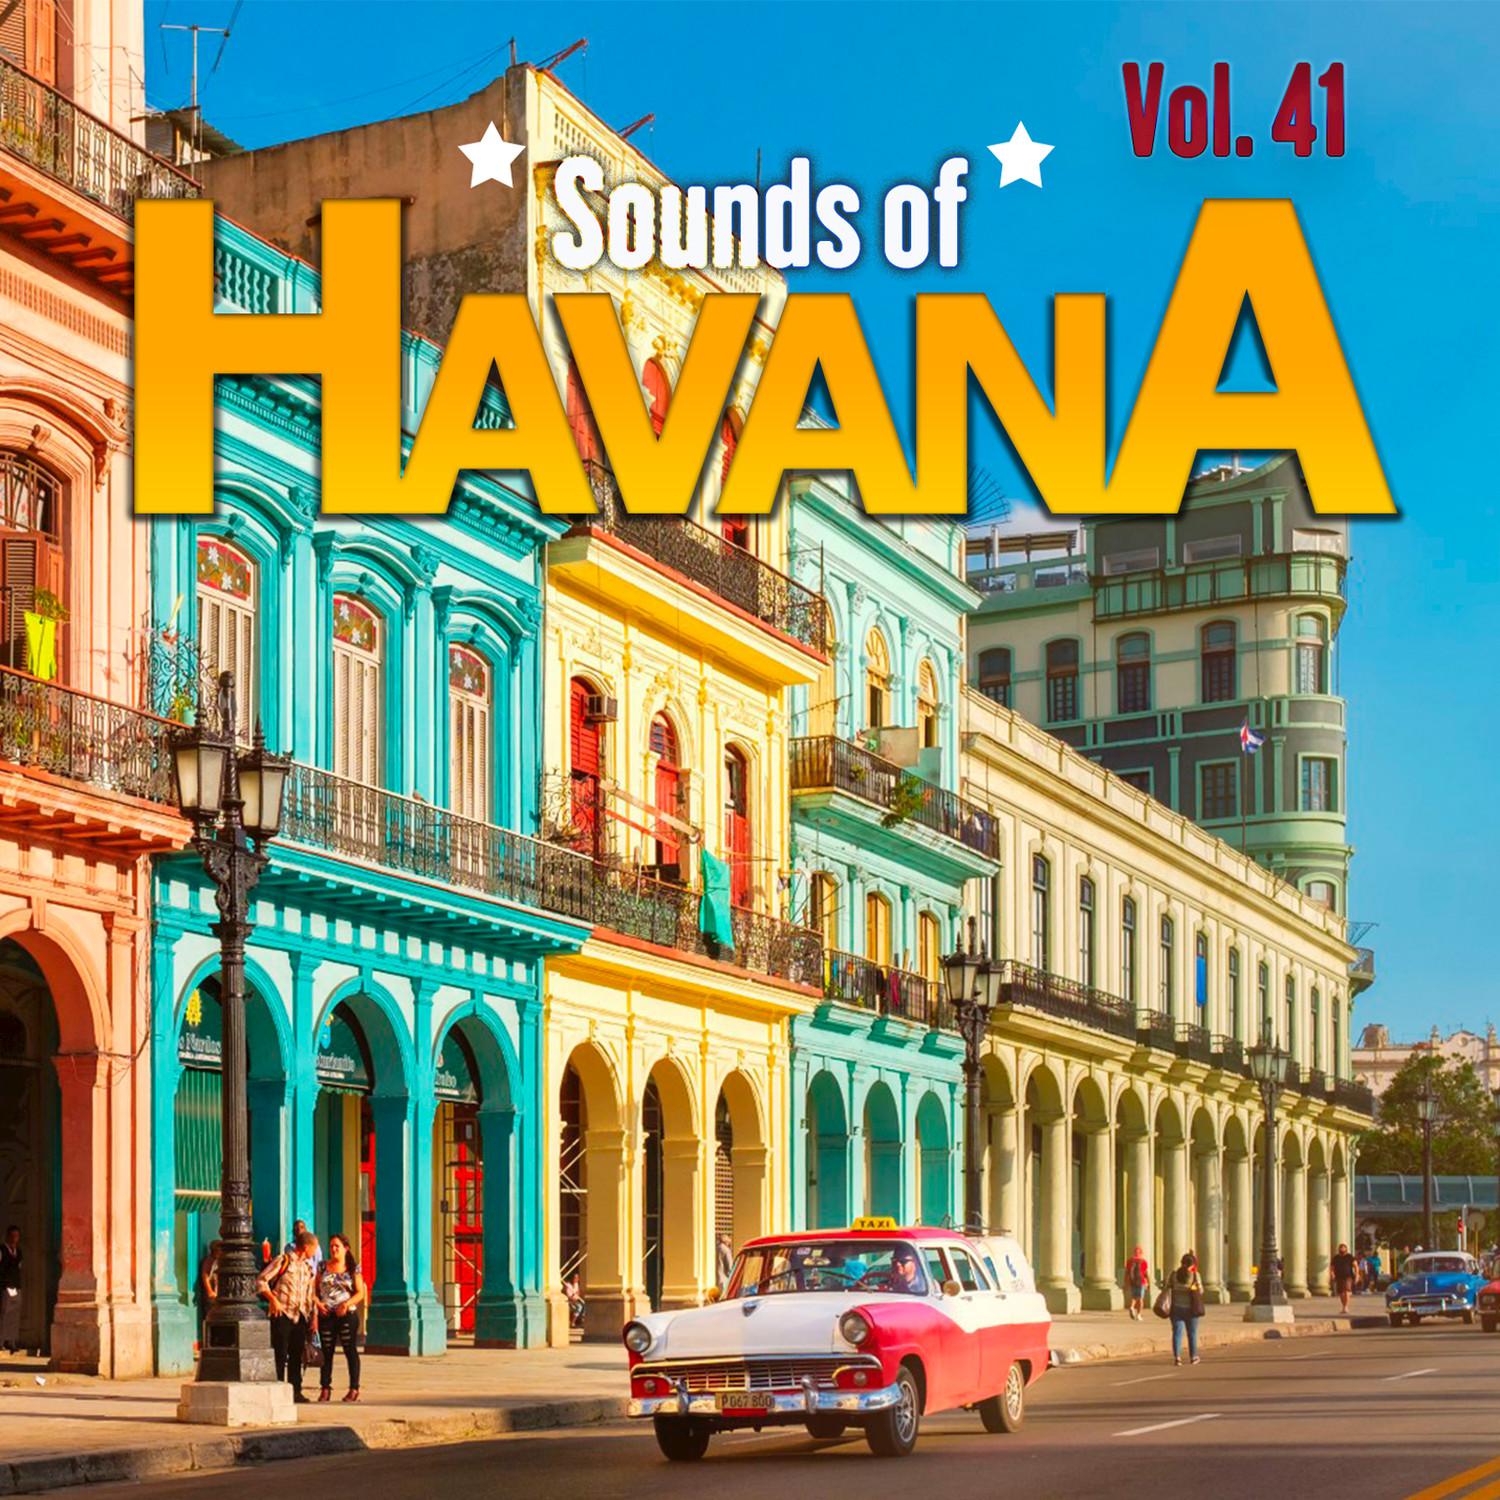 Sounds of Havana, Vol. 41